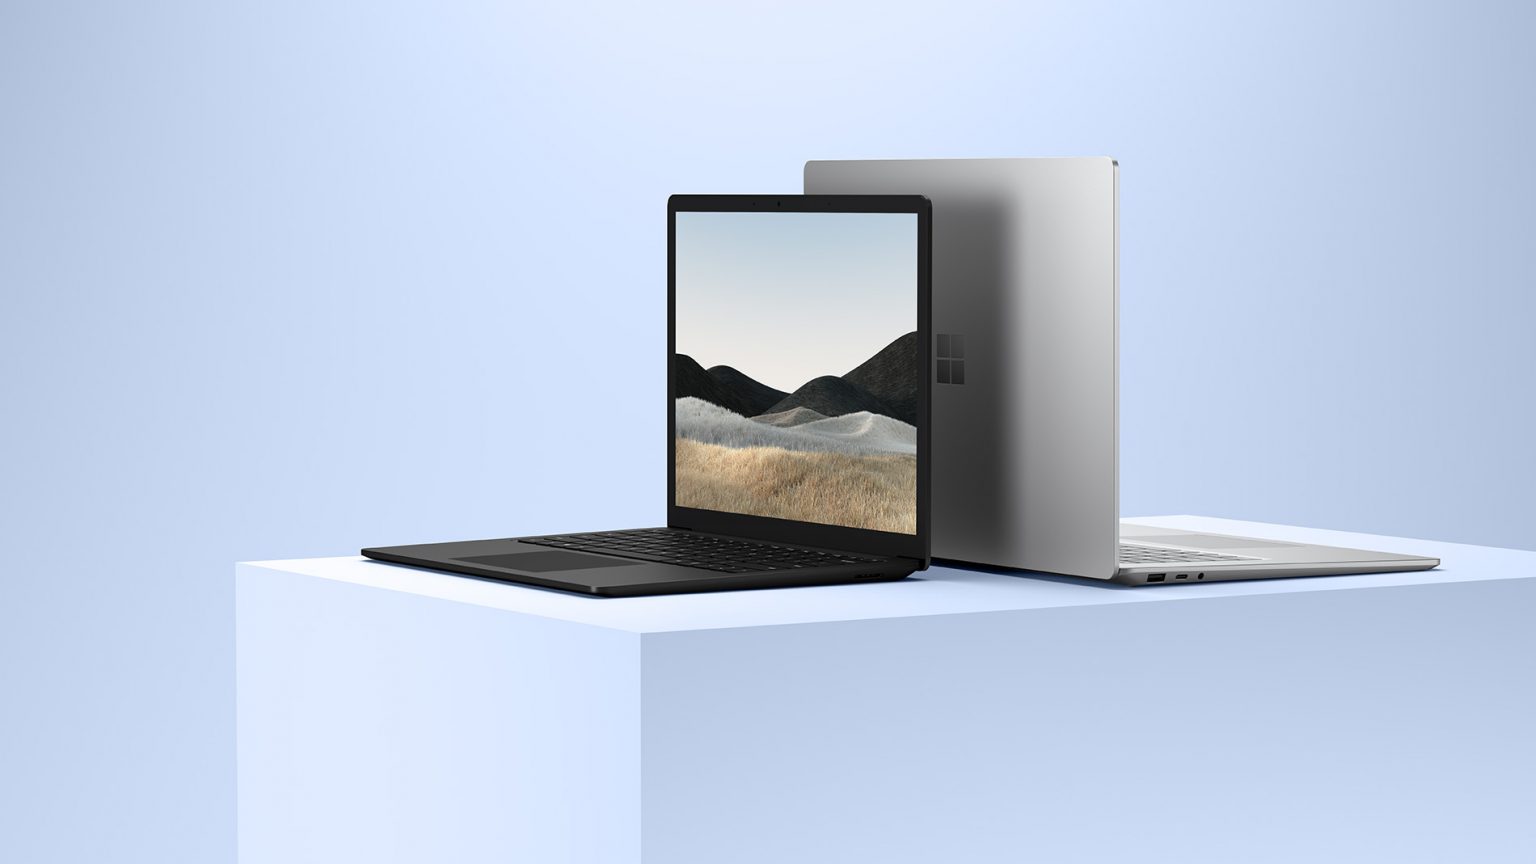 【美品】Surface Laptop 4  13.5インチ/512GB ⑥